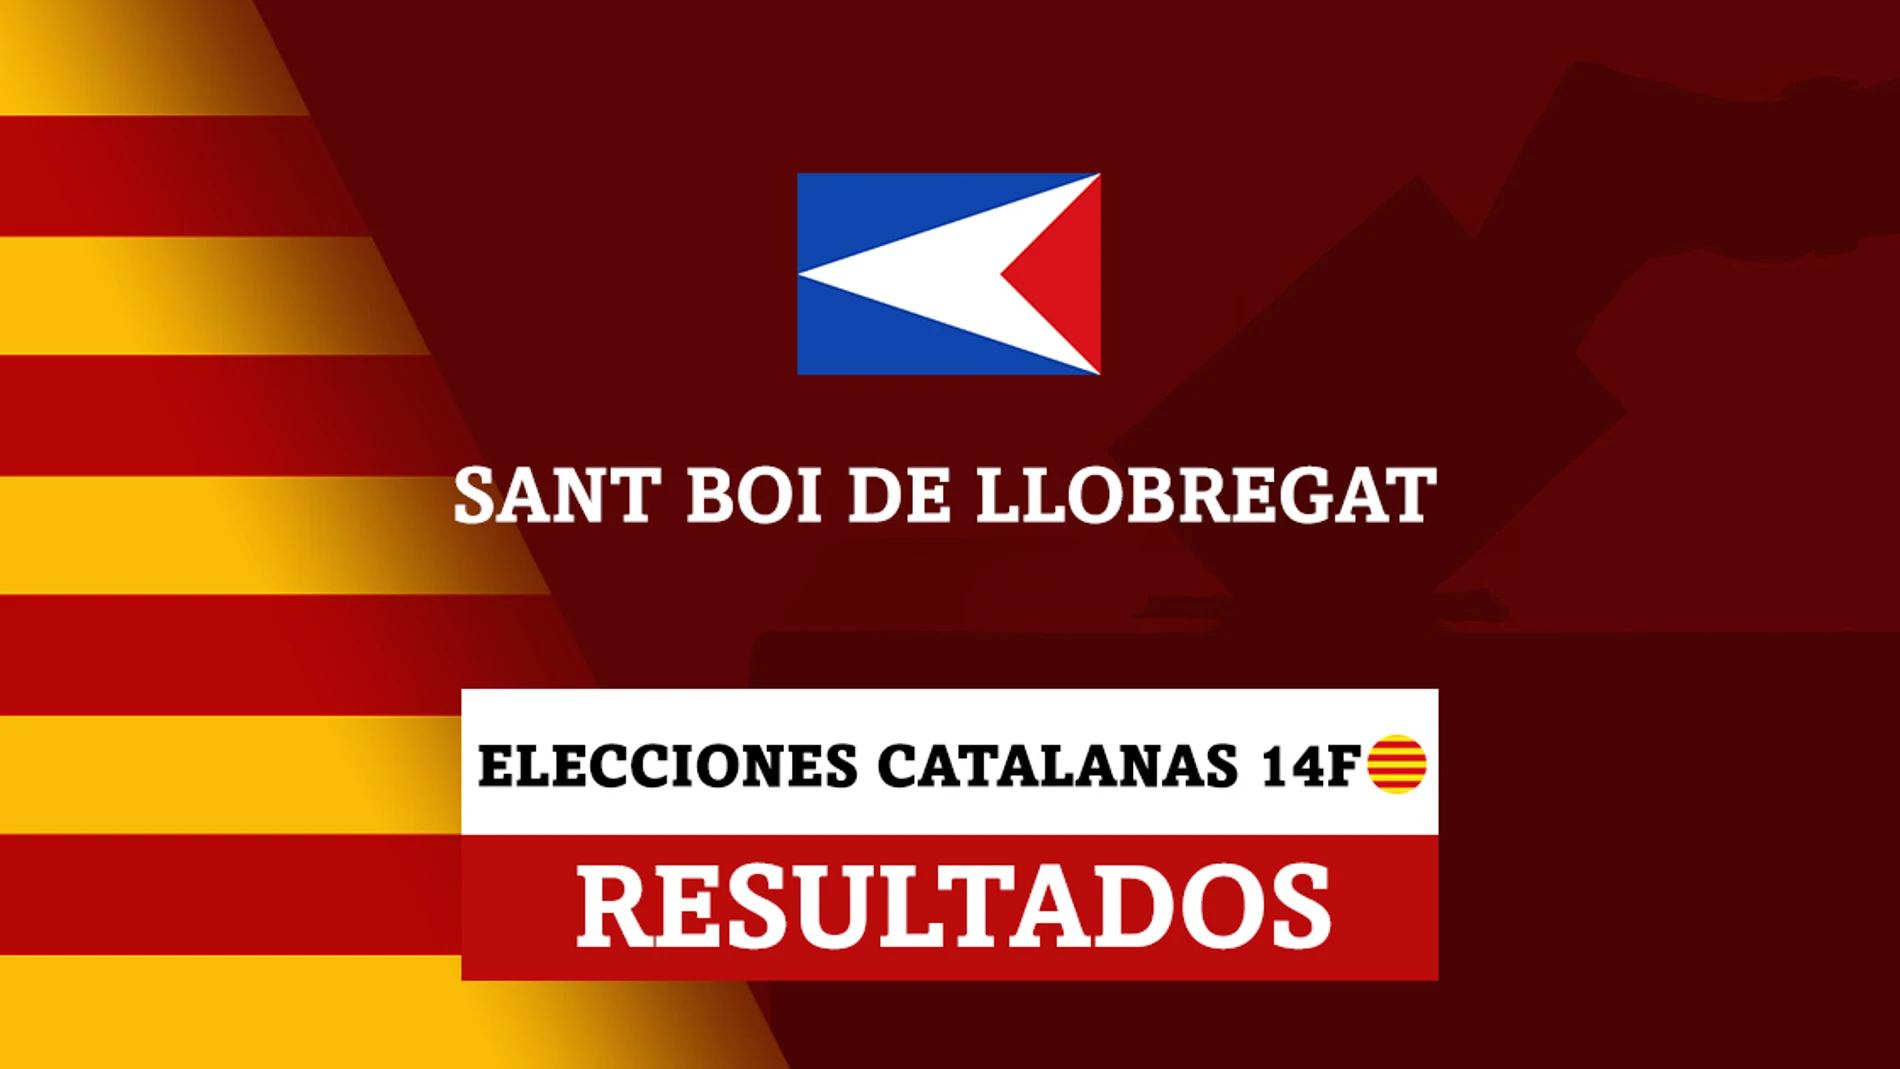 Resultados de las elecciones catalanas en Sant Boi de Llobregat (San Baudilio de Llobregat)